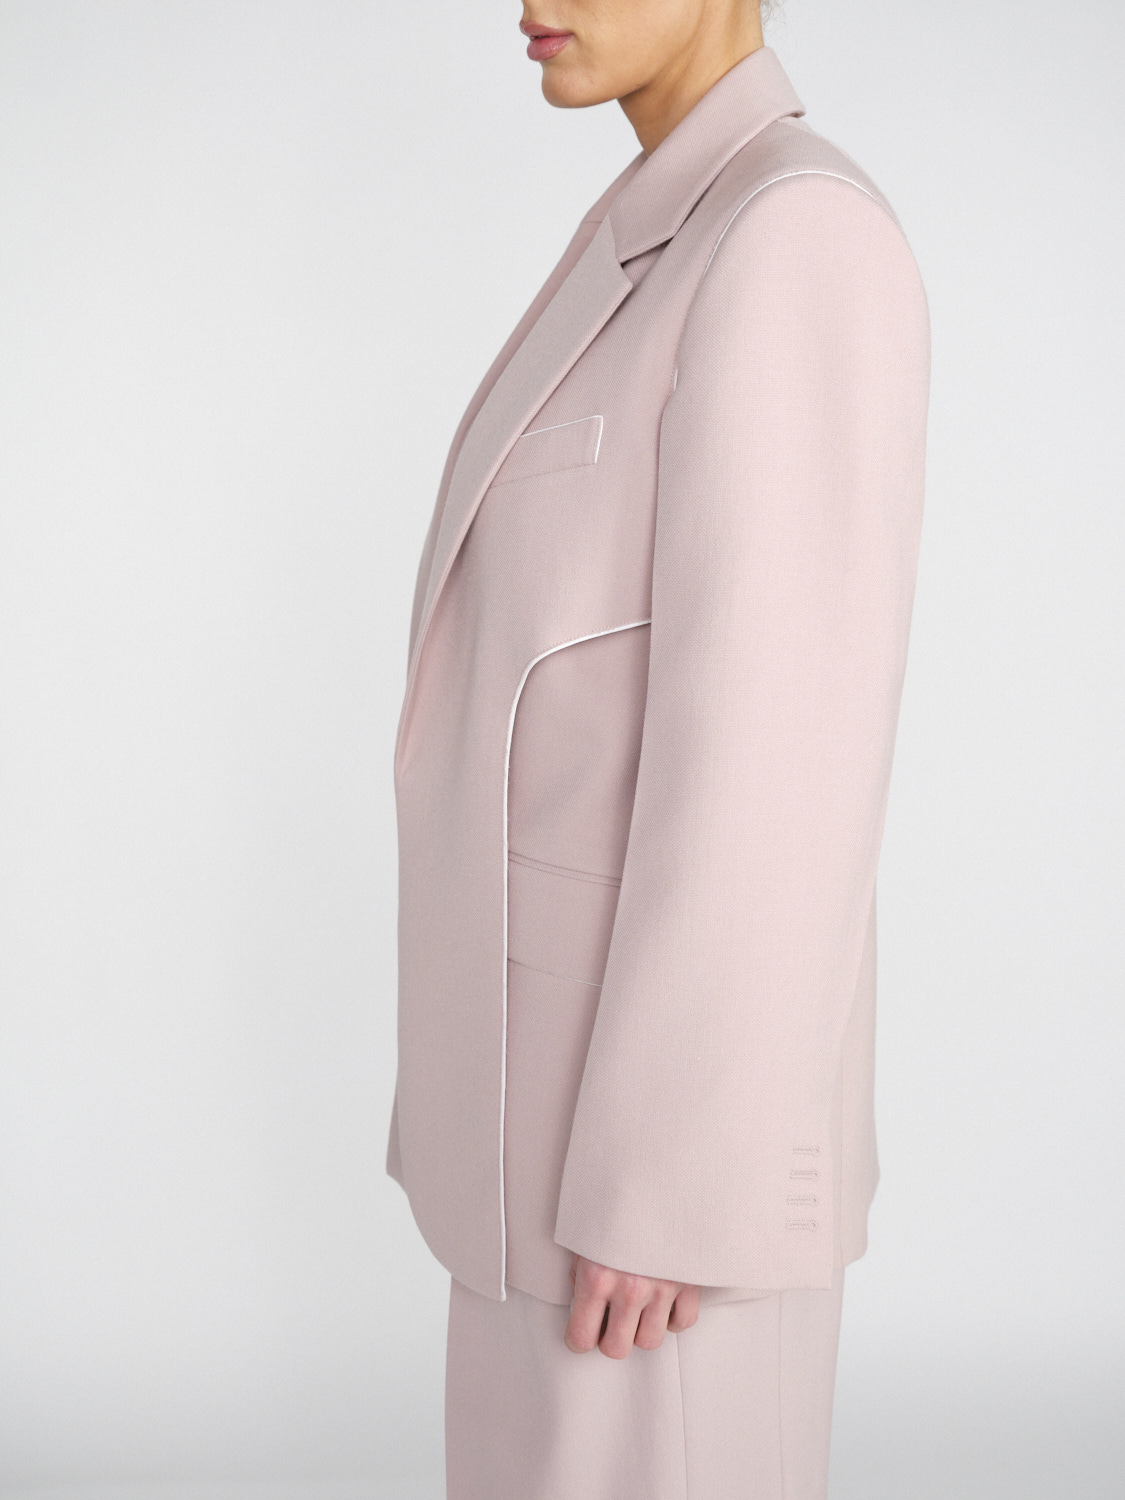 Victoria Beckham Blazer in virgin wool blend with layered details  rosa 34